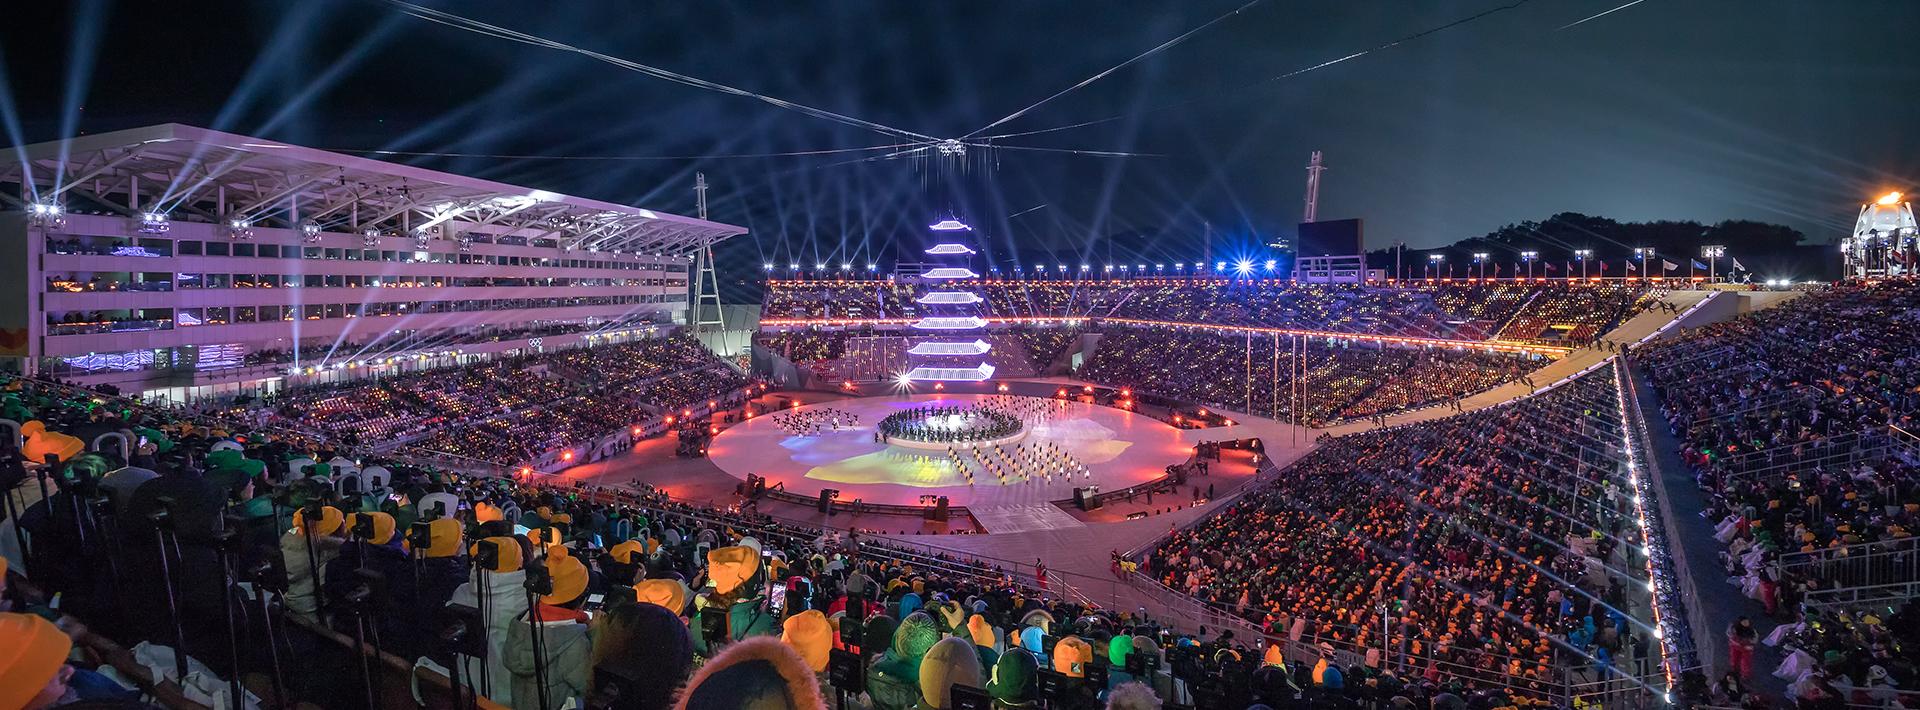 2018 평창올림픽 개폐회장